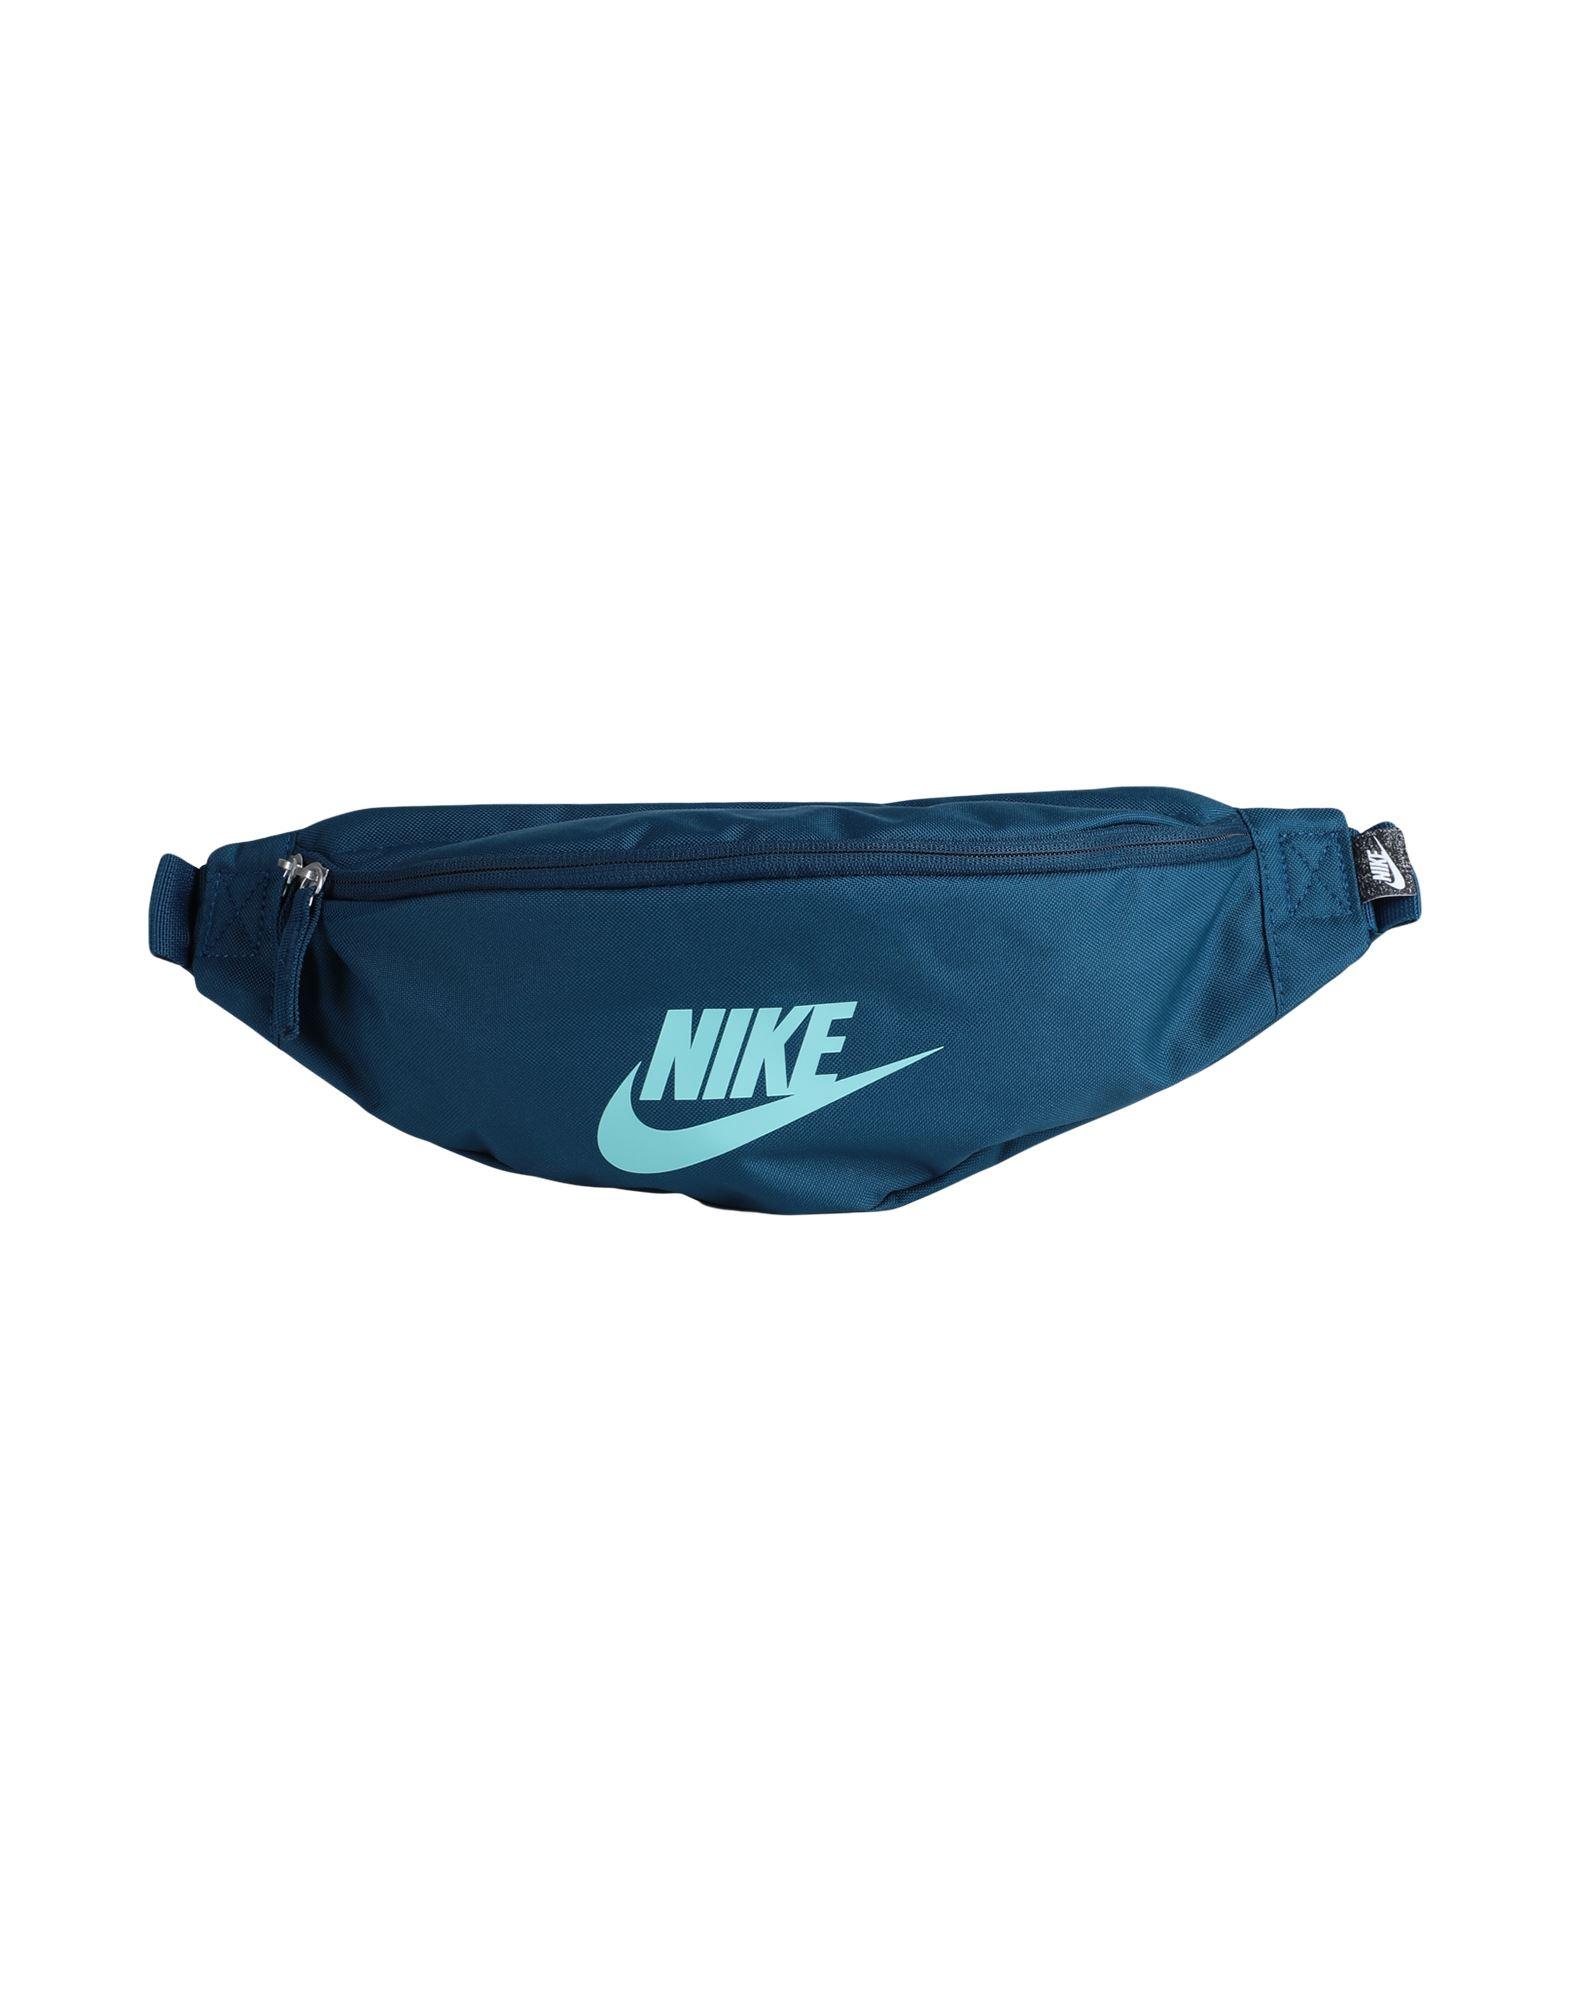 Nike Bum Bag in Blue | Lyst UK